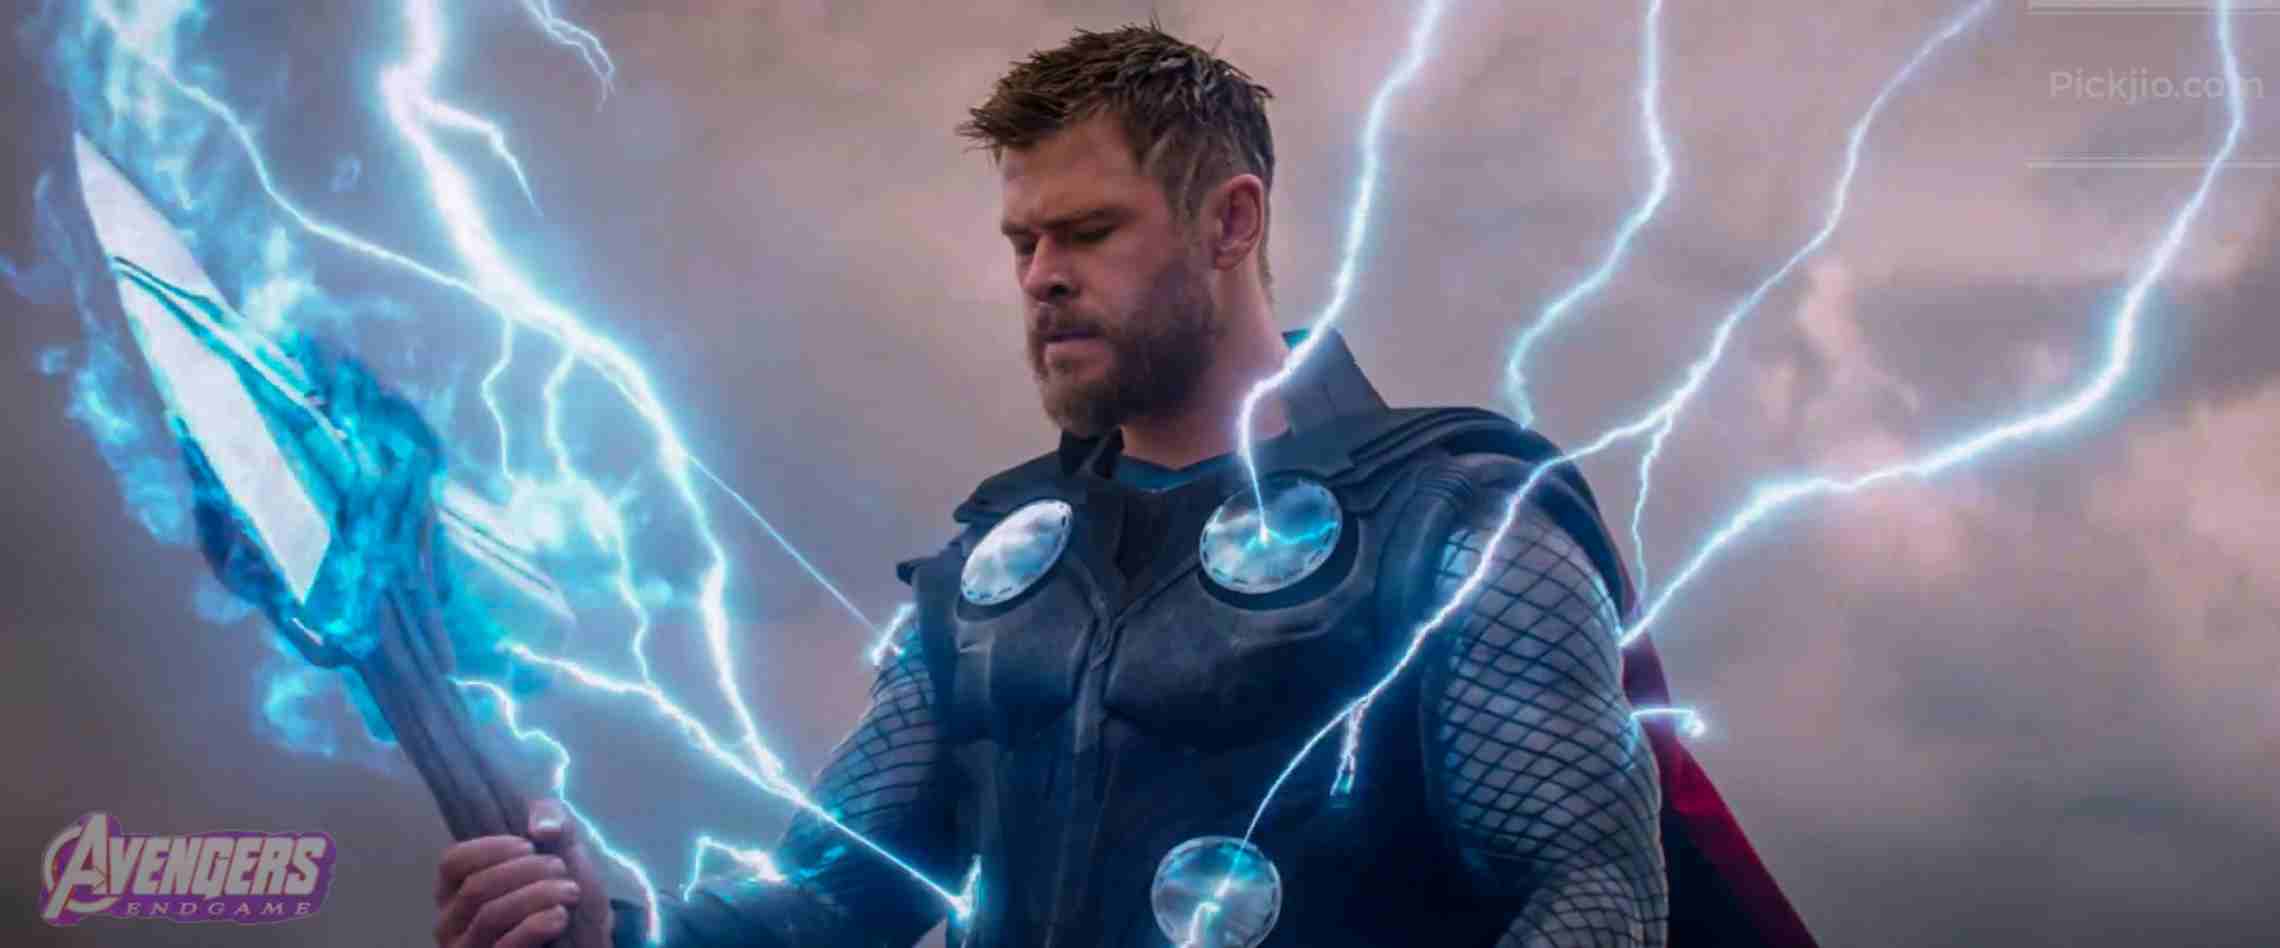 Avengers Endgame (2019) Movie All Superheros Seen